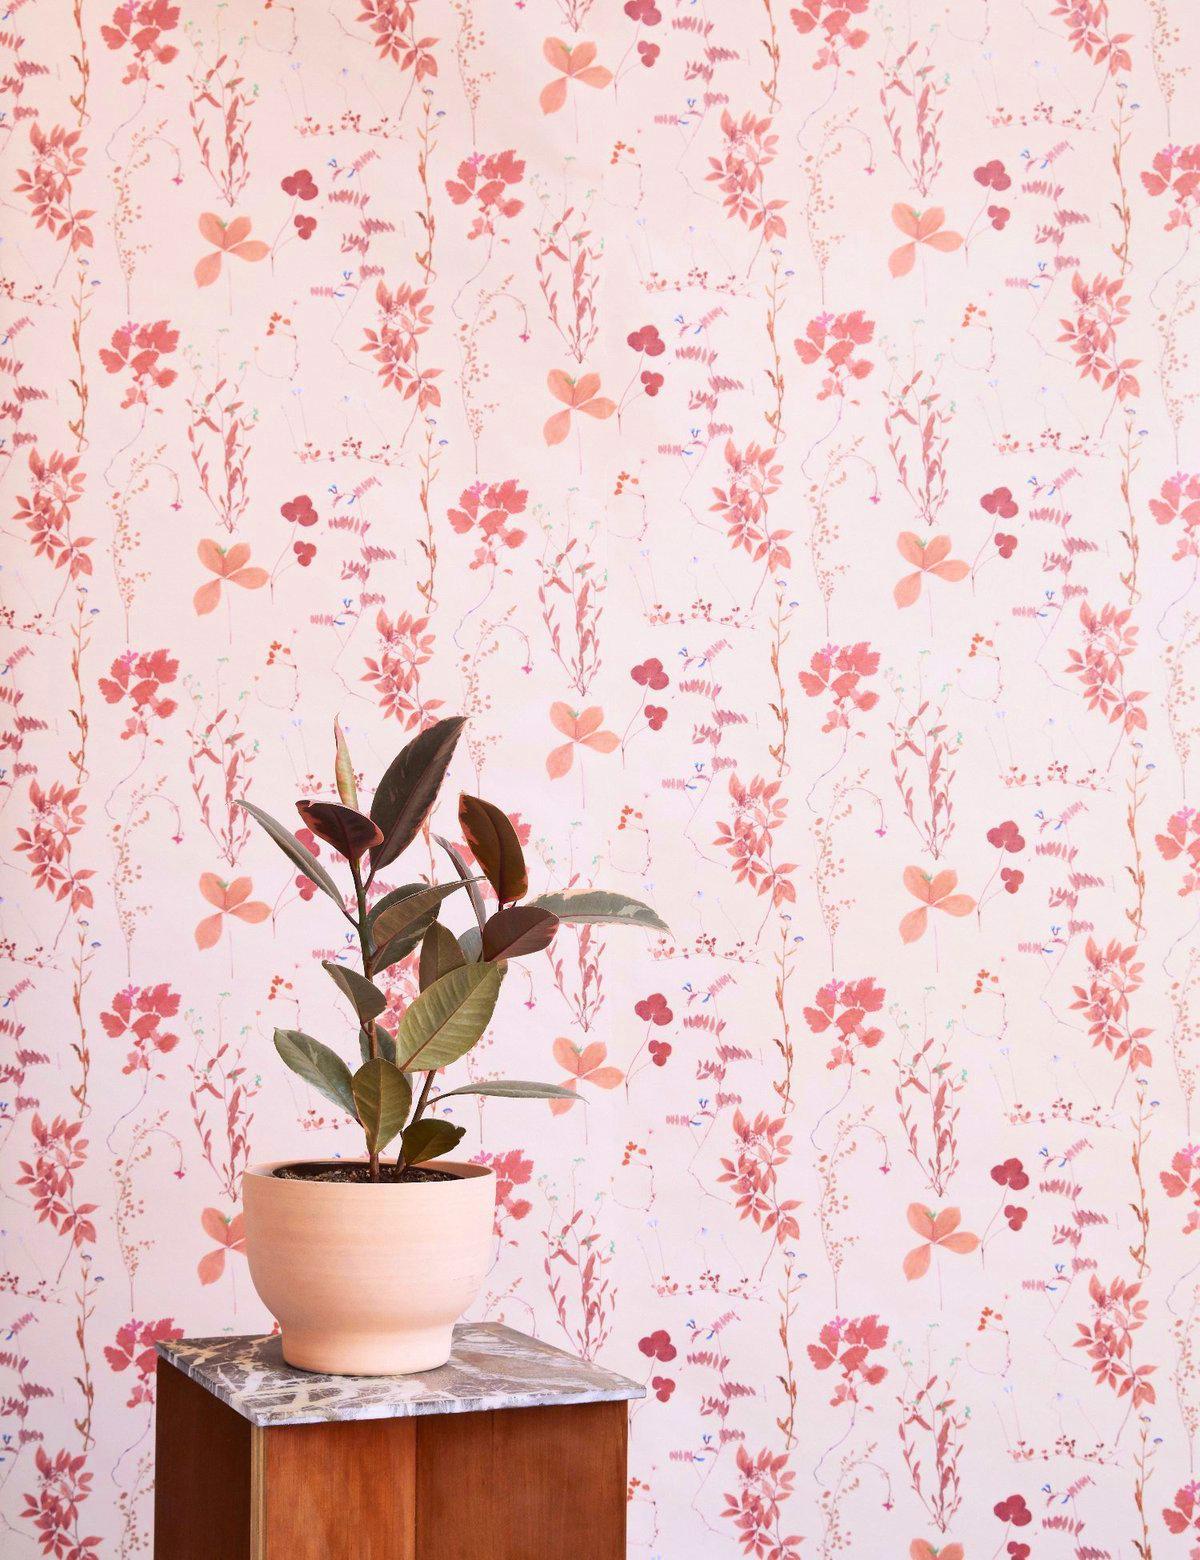 Die Gründerin von Ivana Helsinki, Paola Suhonen, presste Blumen in ein Buch und gründete Jahre später Herbario. Aimée arbeitete mit diesen Elementen, um eine Vielzahl von farbenfrohen Tapeten und Stoffen für den Wohnbereich zu entwerfen. 

Muster